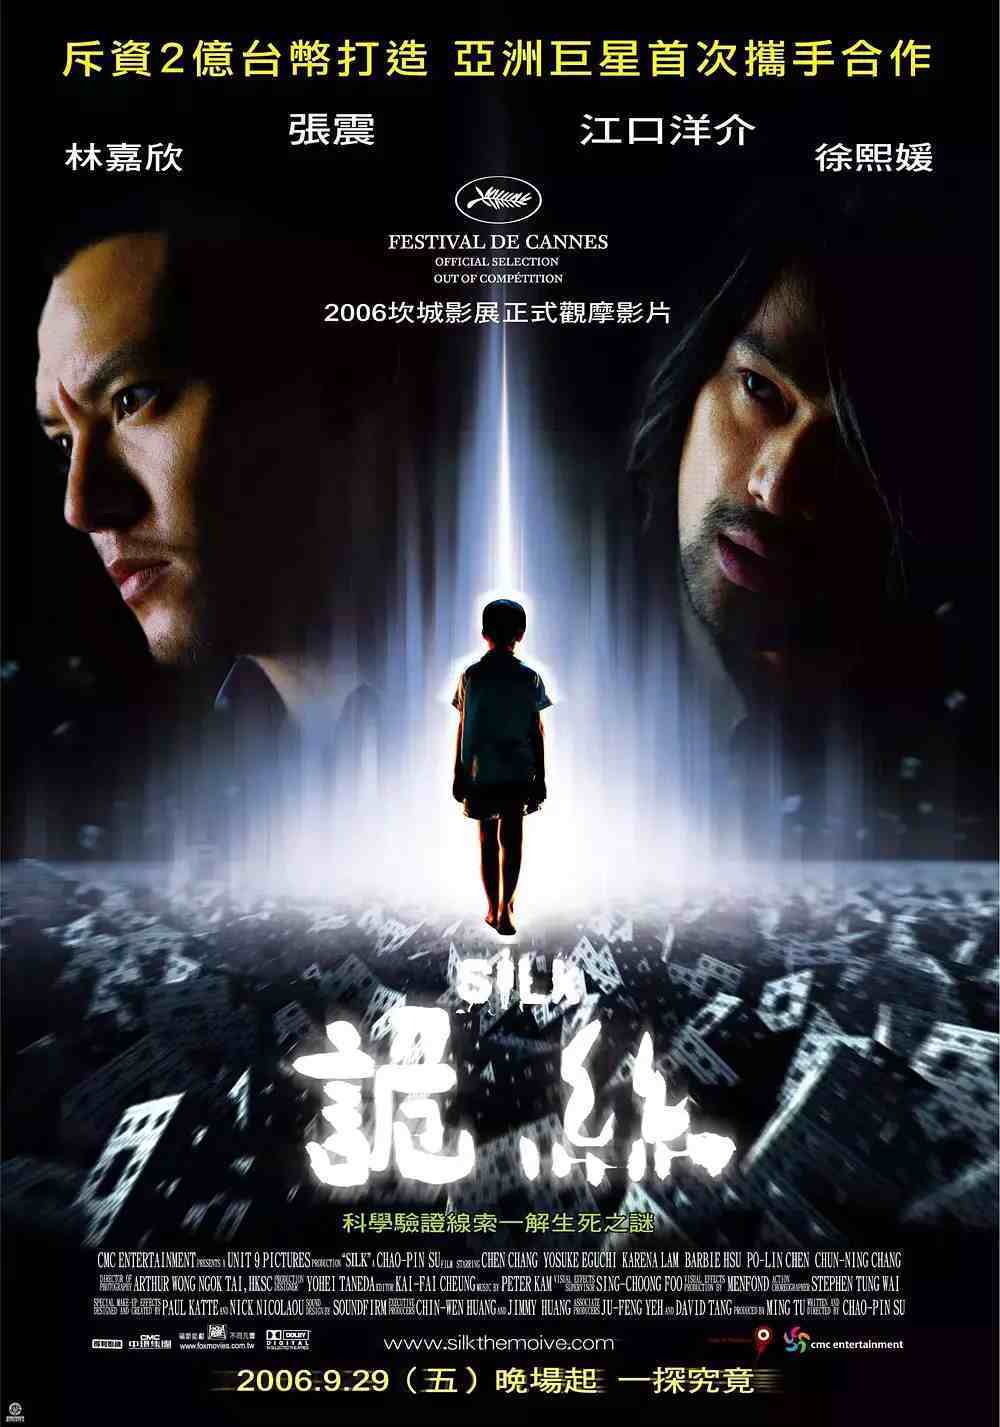 12年前，台湾上映了一部恐怖片，观影中竟有8成观众因感动啜泣